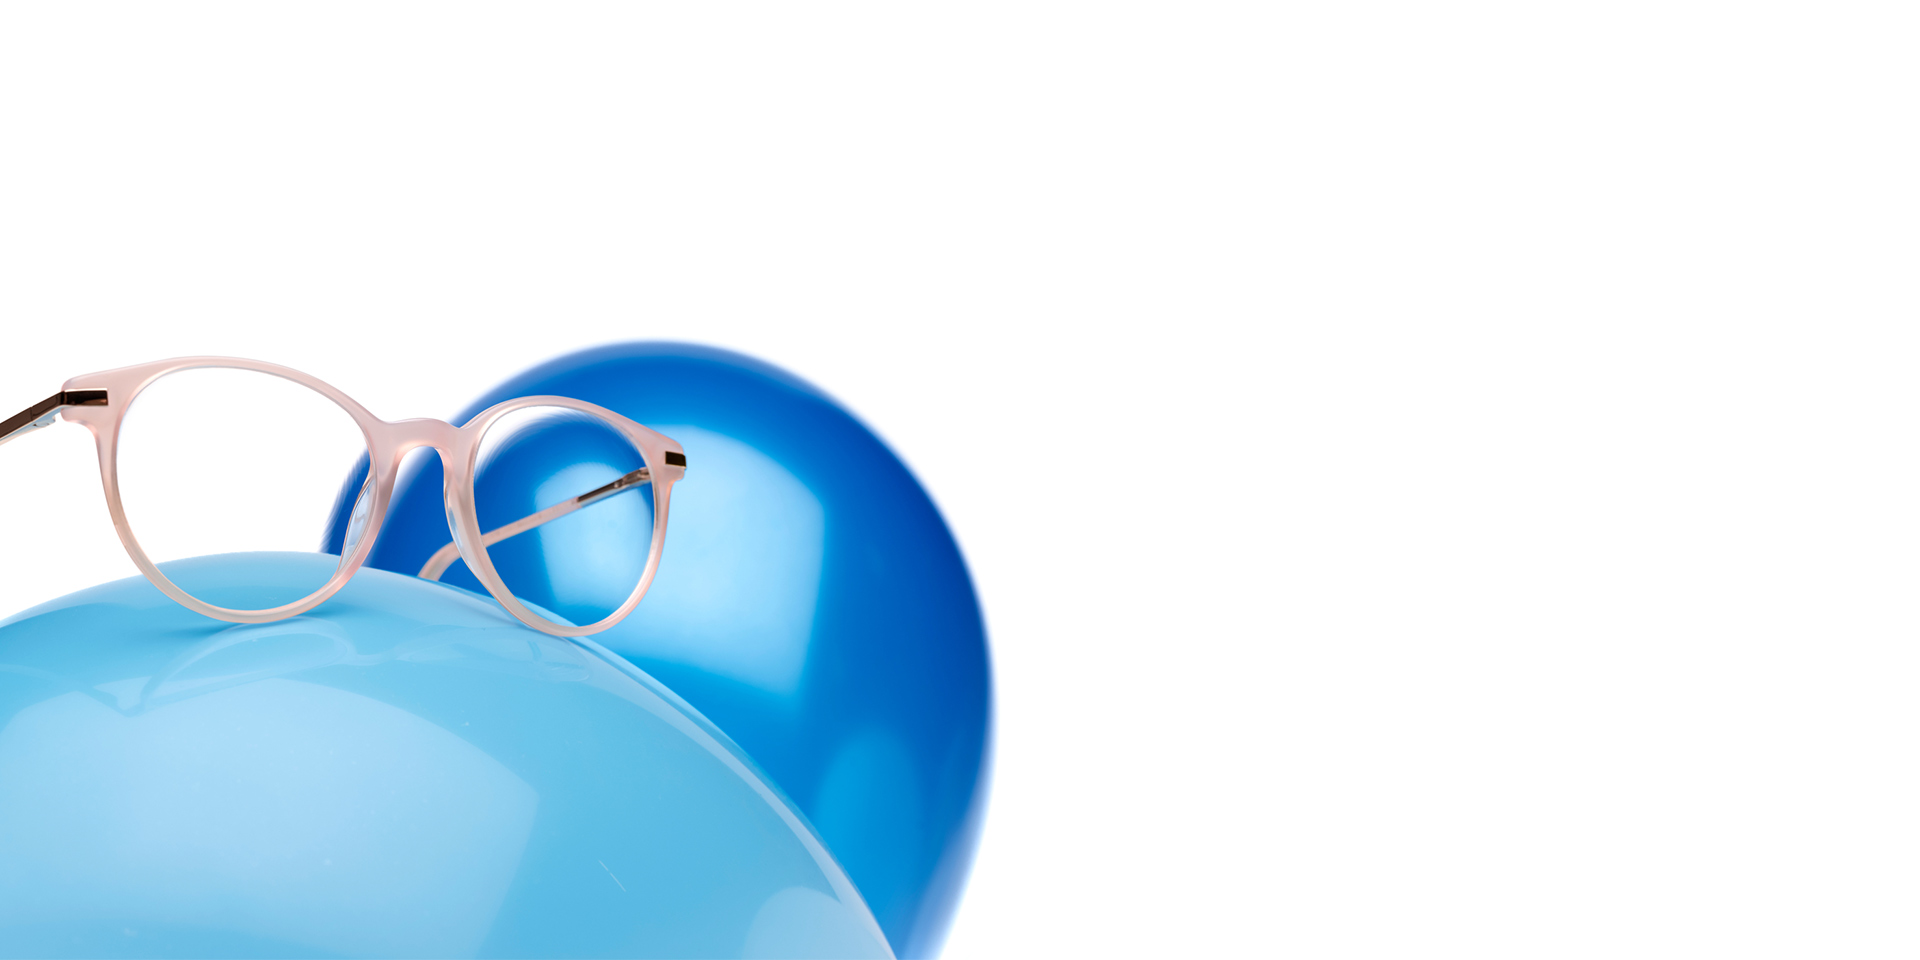 ZEISS MyoCare -linssit roosabeigeissä kehyksissä näkyvät vaaleansinisessä ilmapallossa. Taustalla on toinen hieman tummemman sininen ilmapallo.